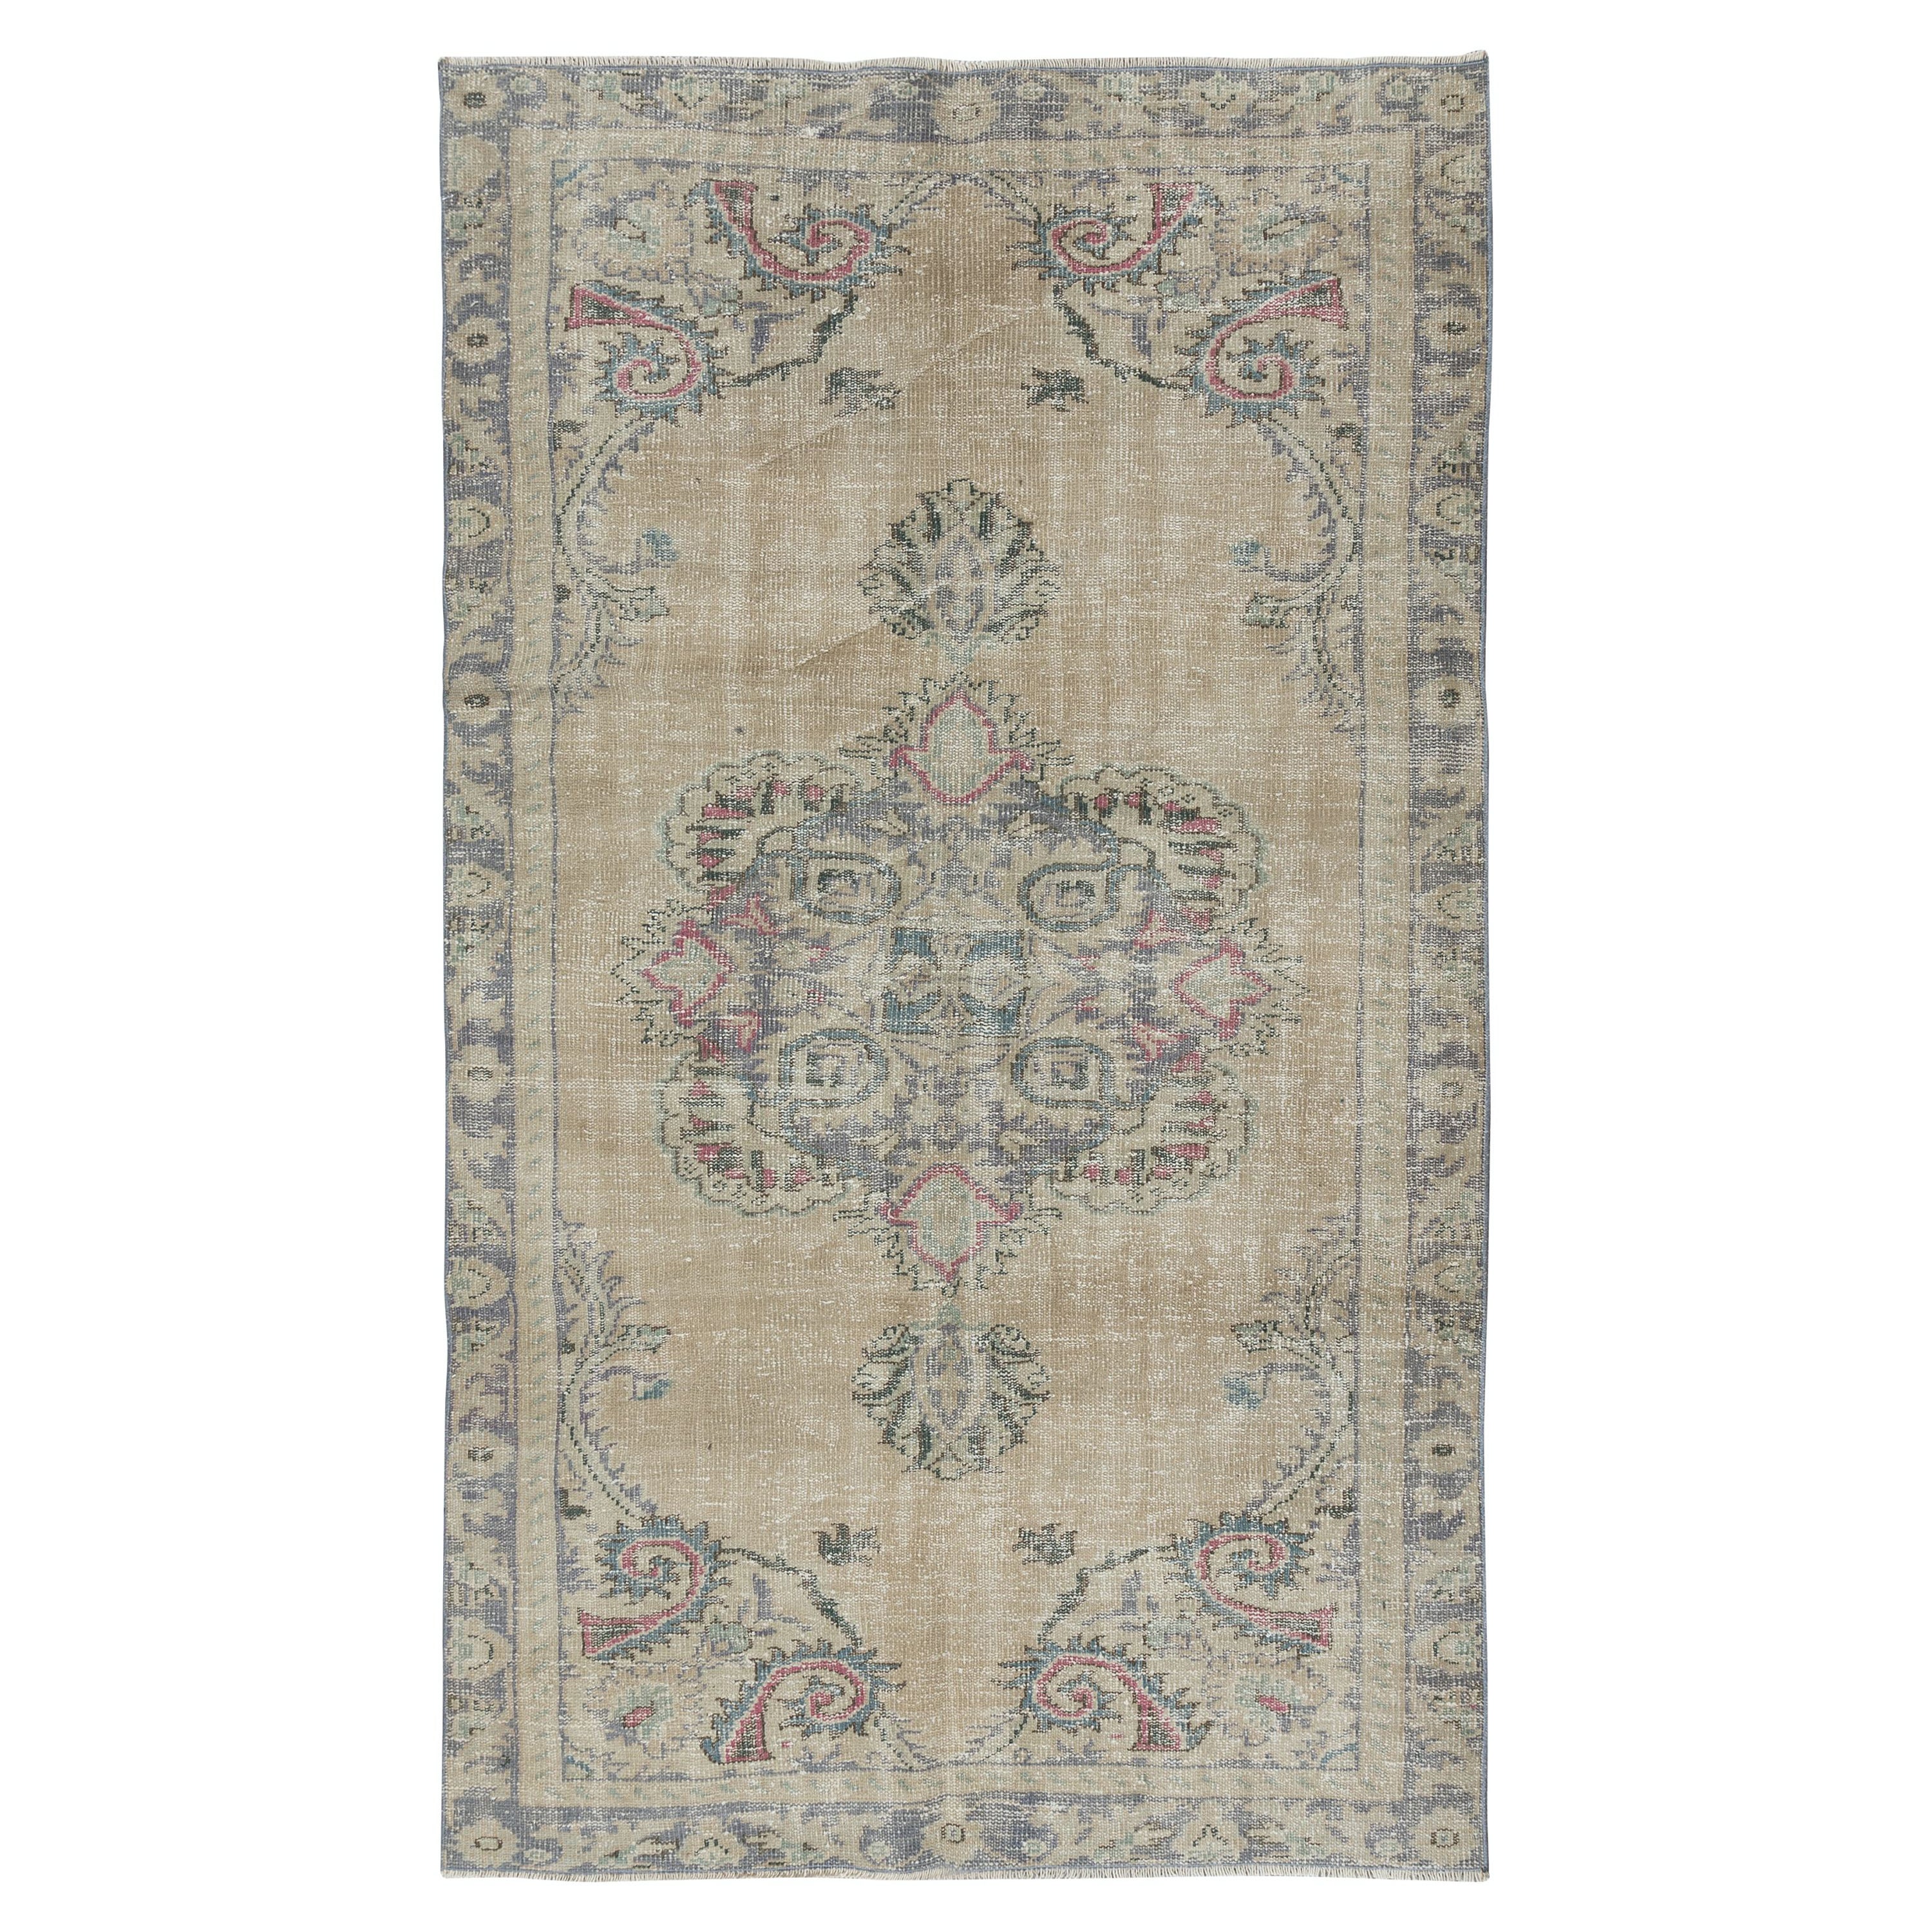 4,8x7,8 Ft Vintage Sun Faded Teppich, handgeknüpfter türkischer Teppich in Beige & Grau